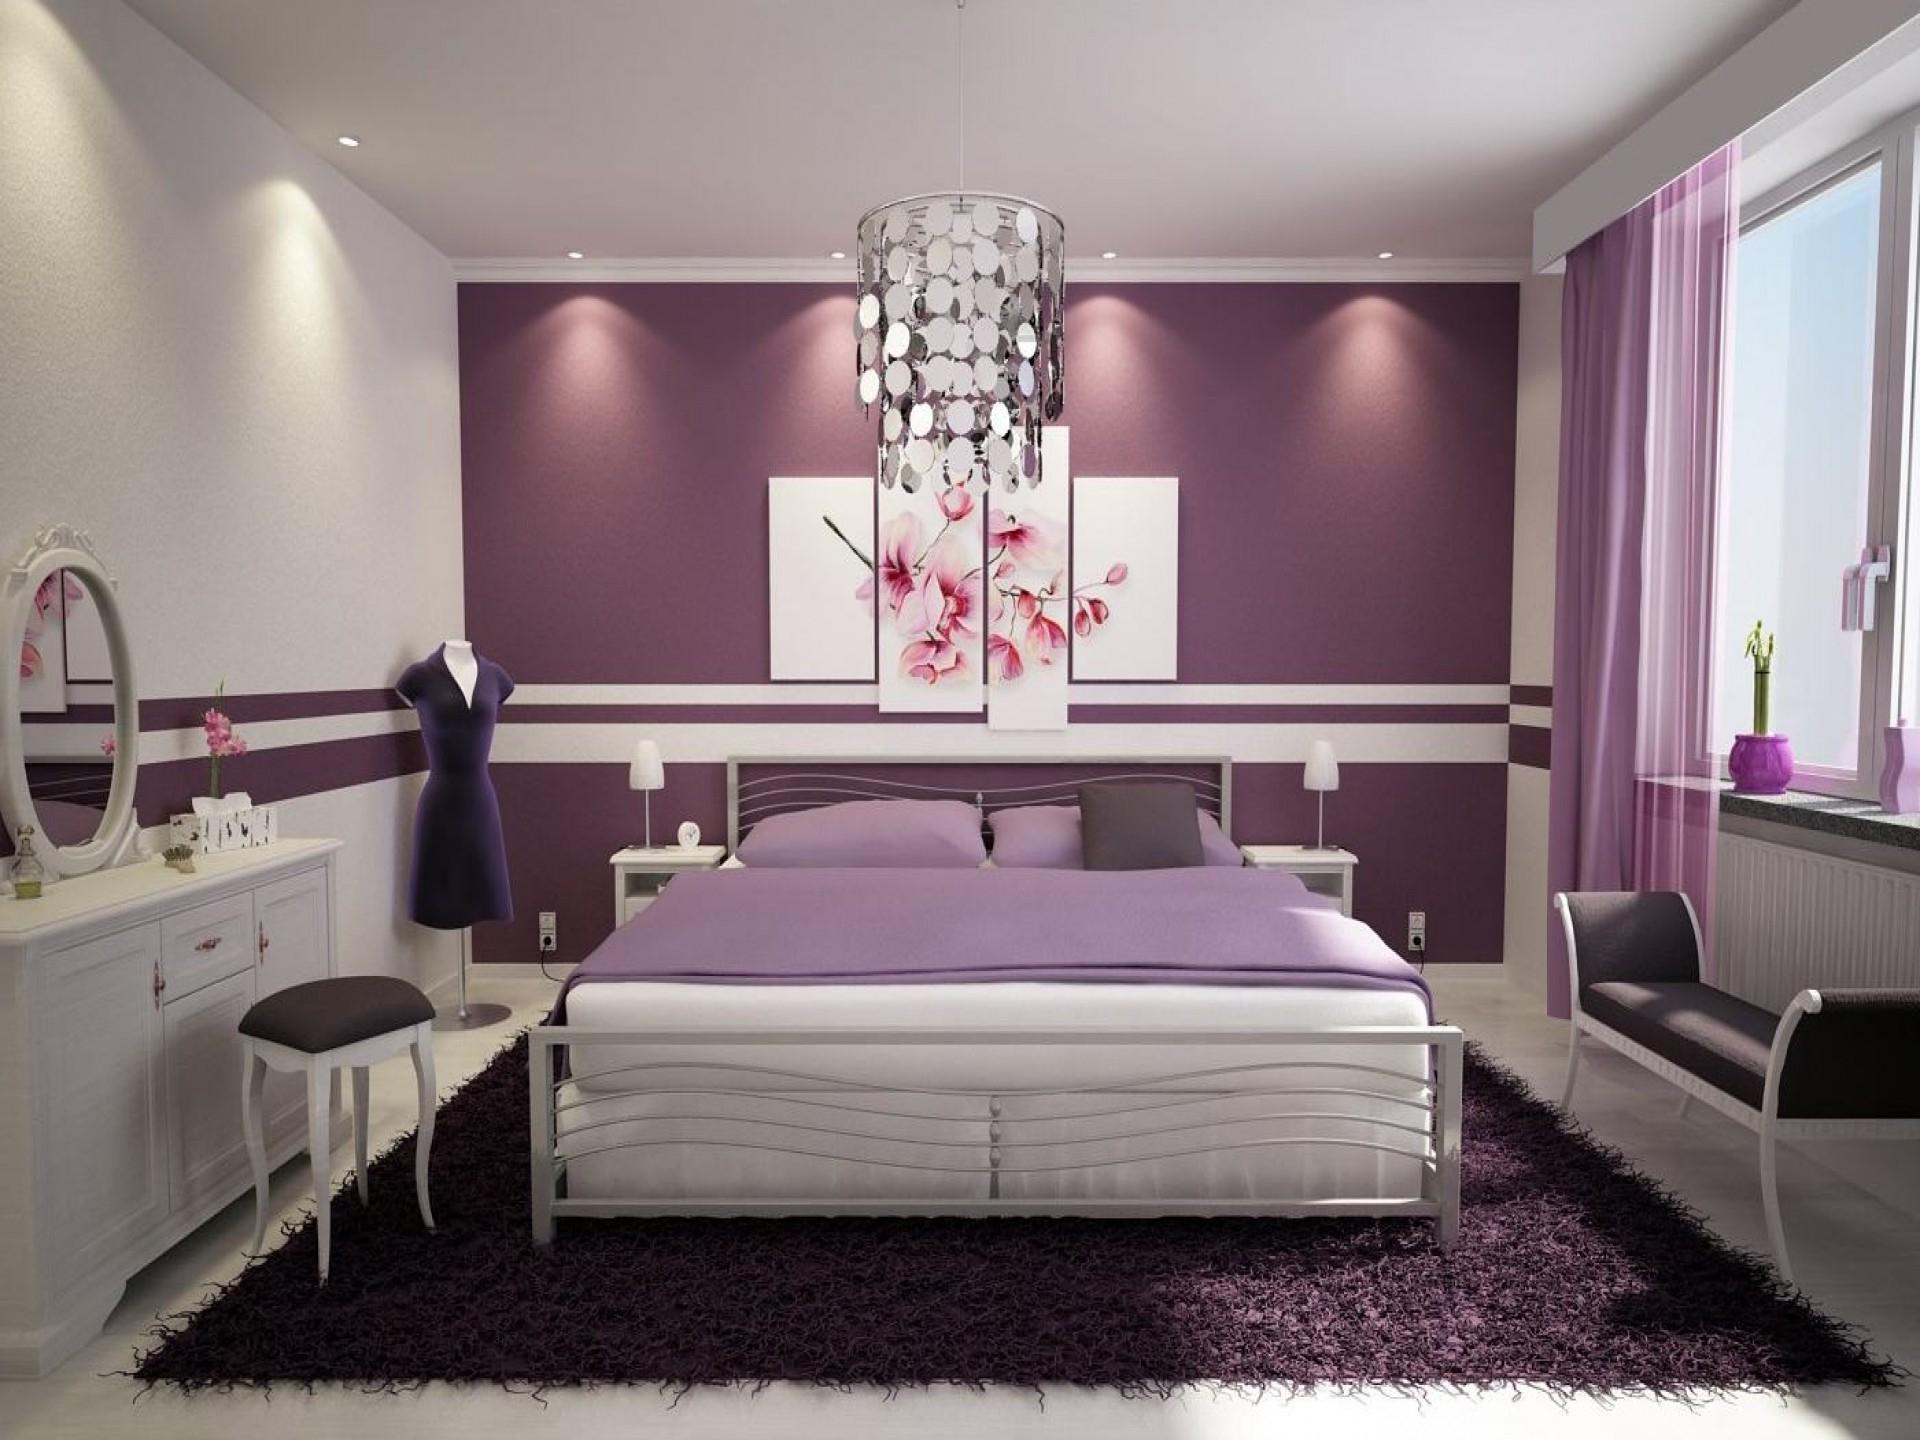 Светлая спальня – актуальные тренды в дизайне интерьеров (фото)